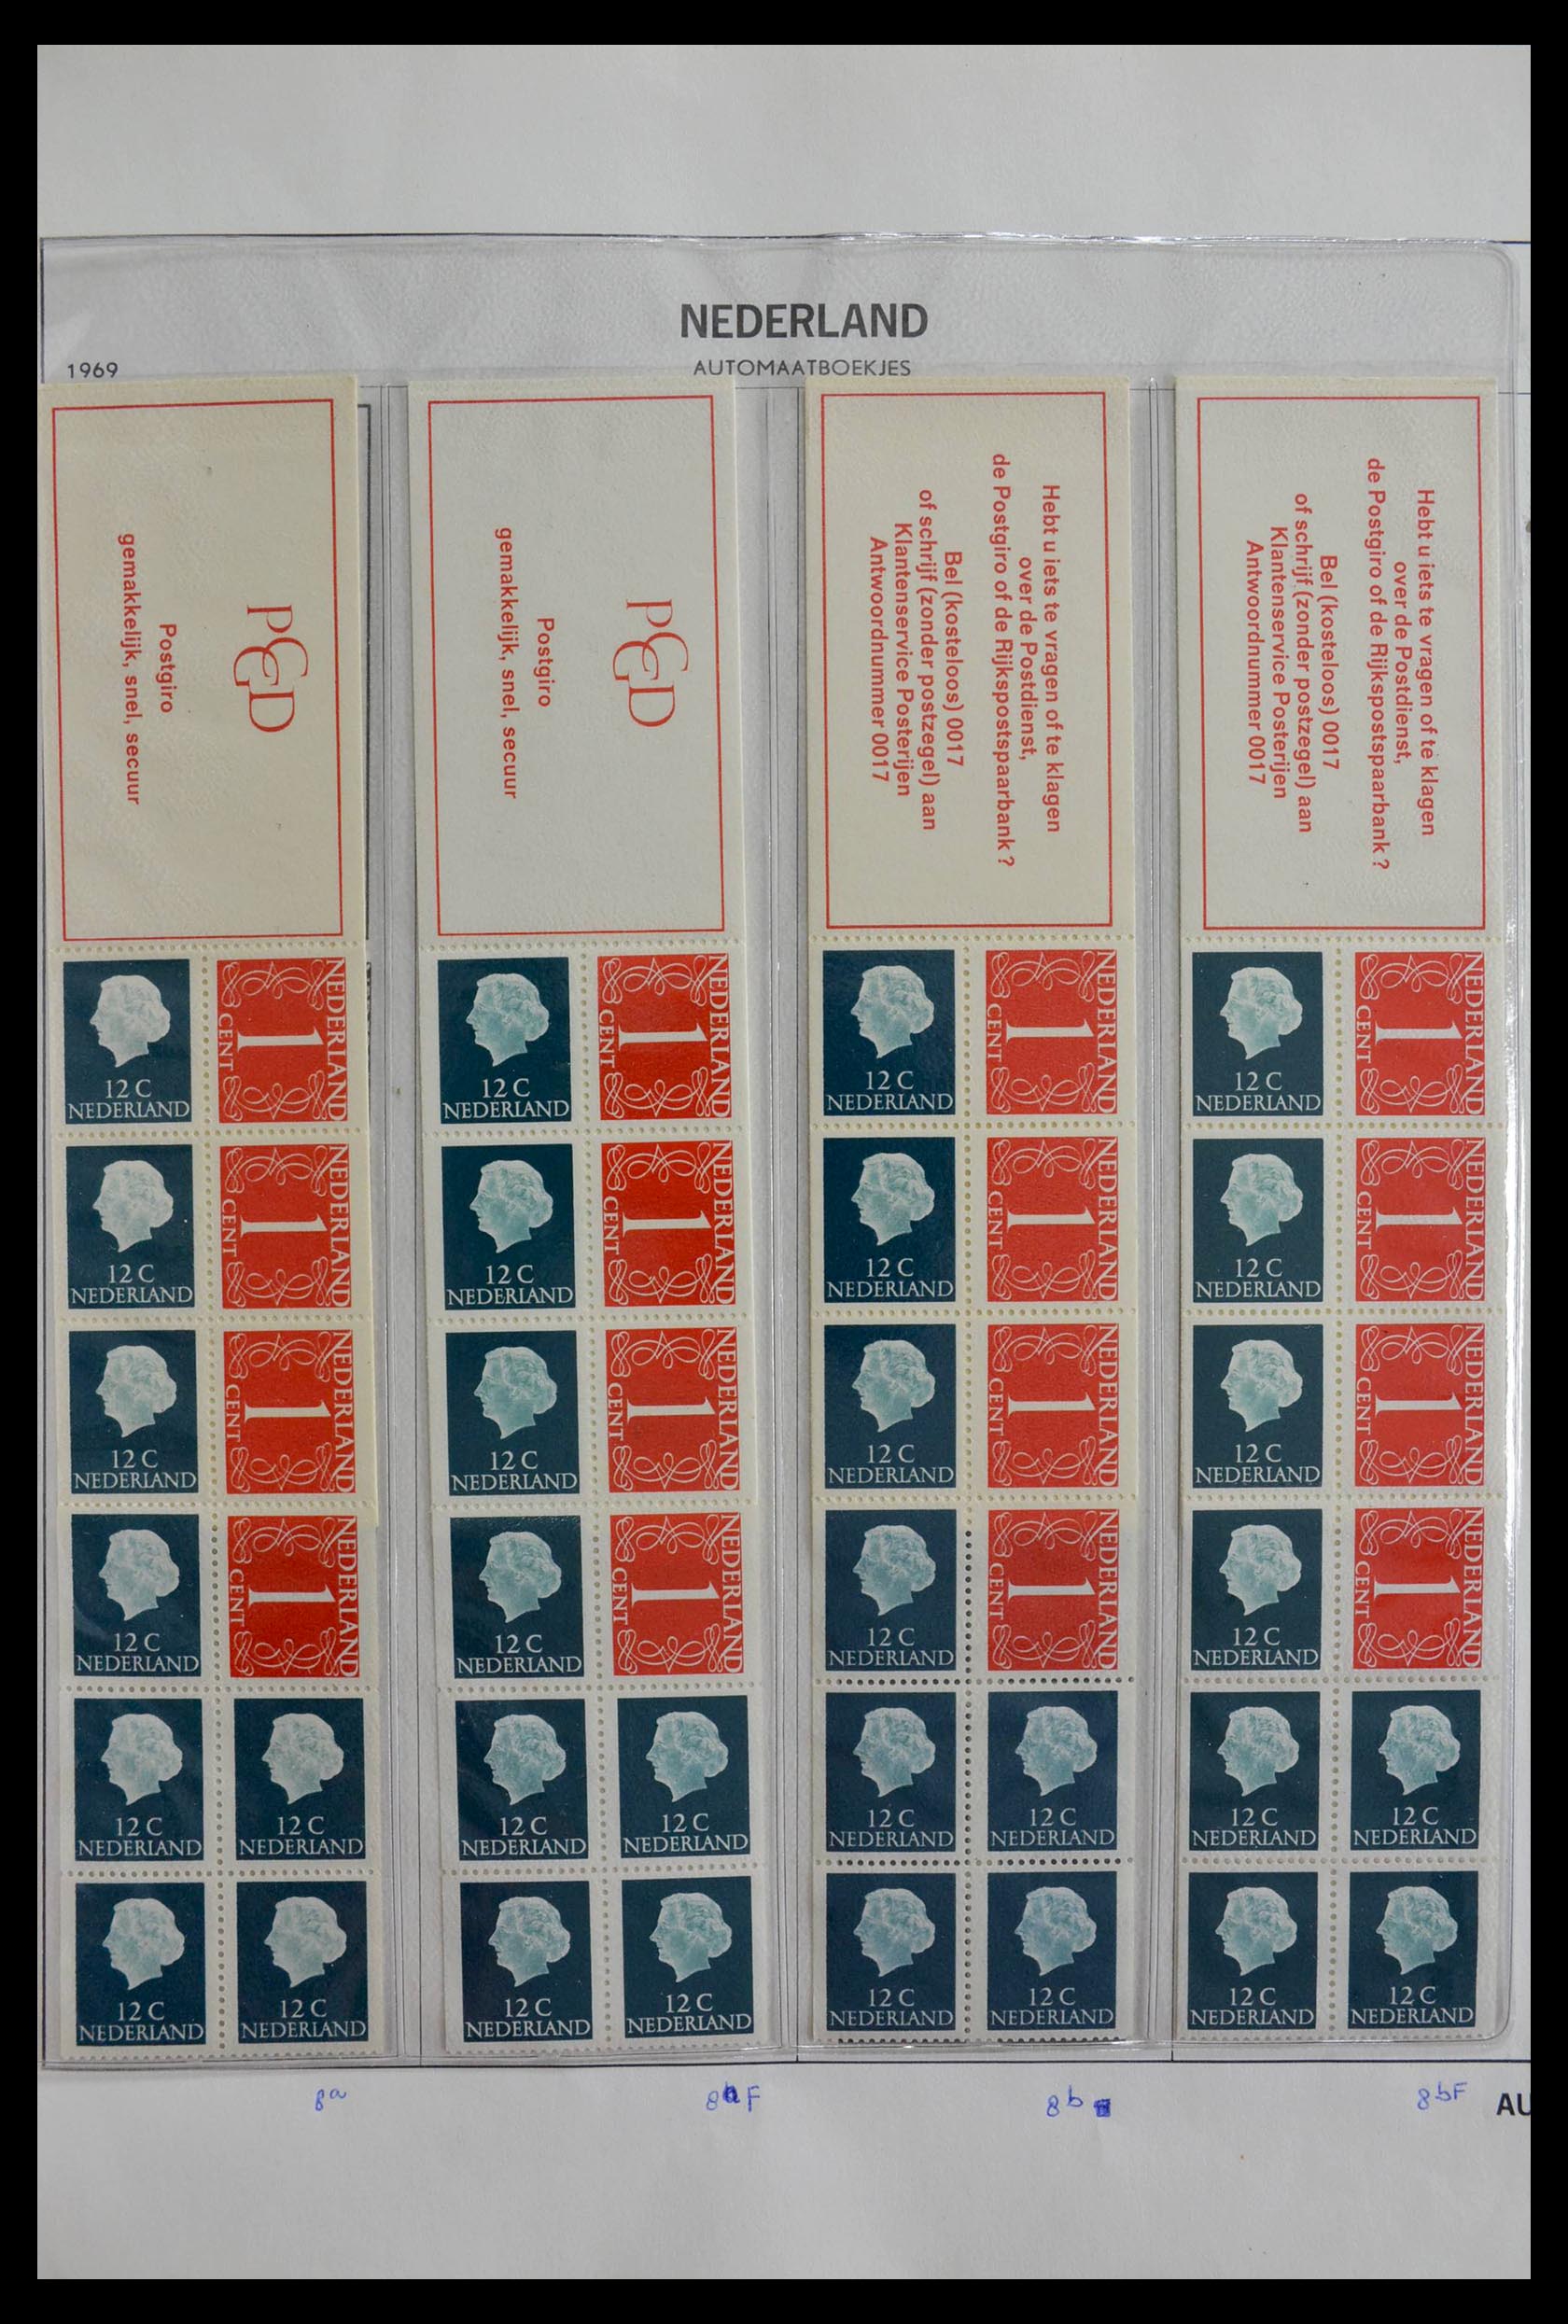 28853 005 - 28853 Netherlands stampbooklets 1964-2005.